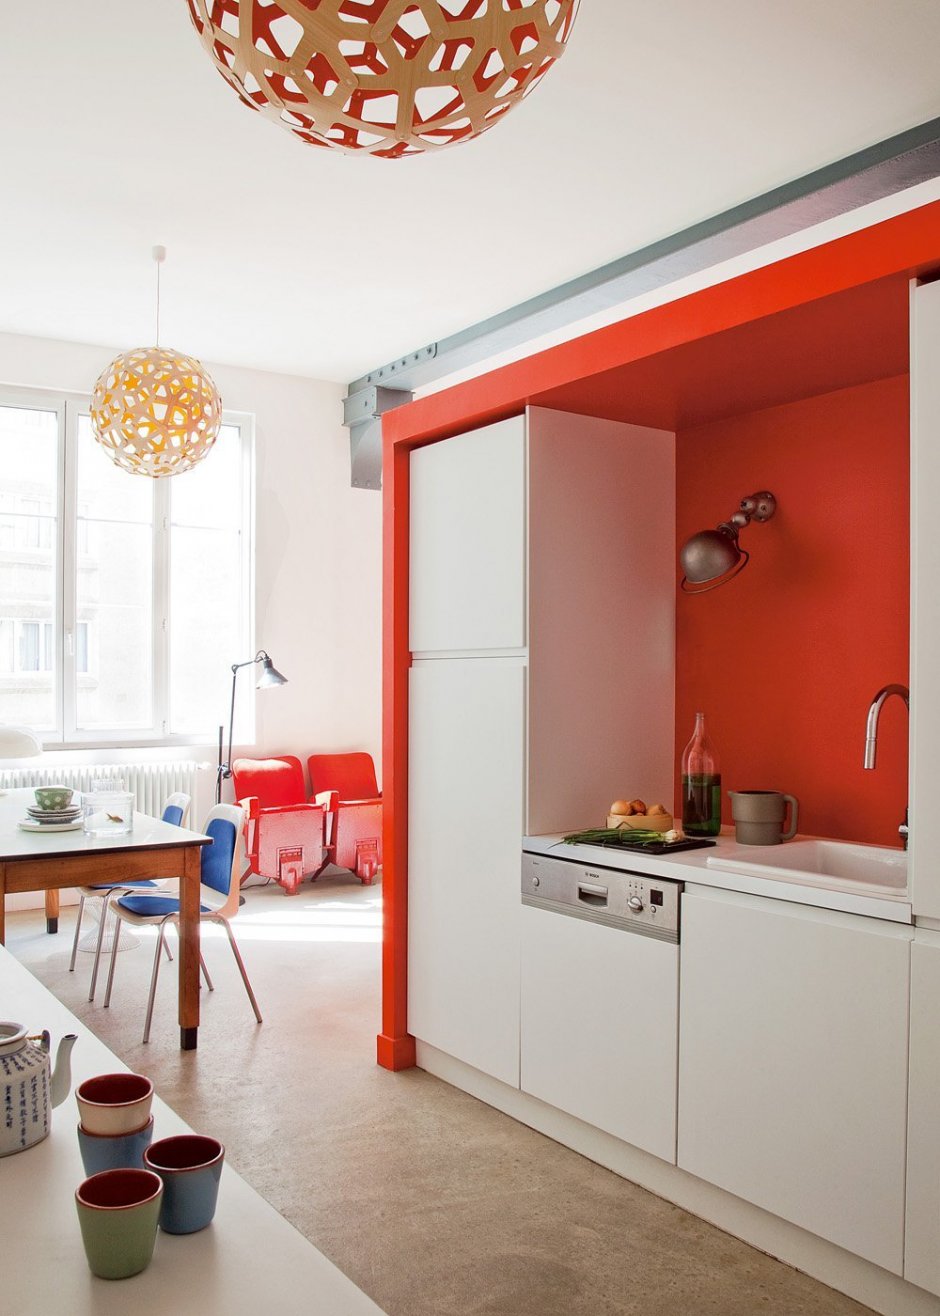 Оранжевый холодильник в интерьере кухни